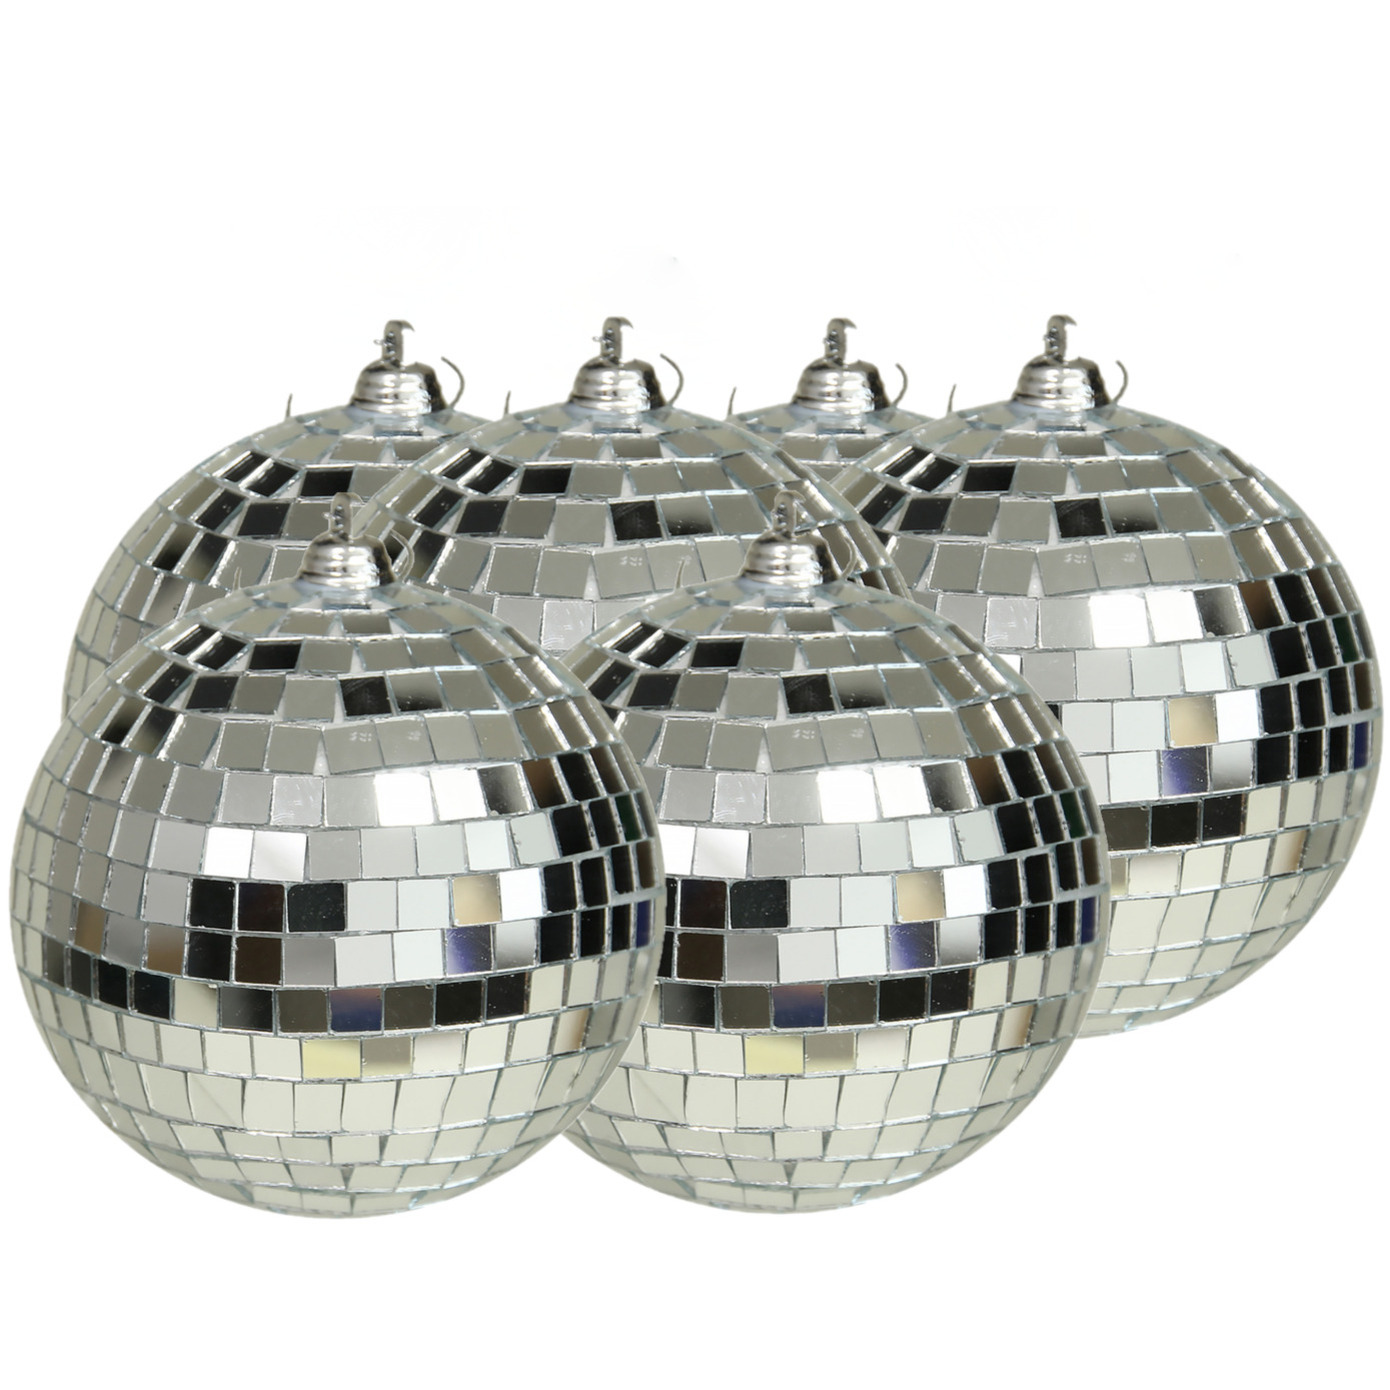 Grote discobal kerstballen 6x stuks zilver 10 cm kunststof